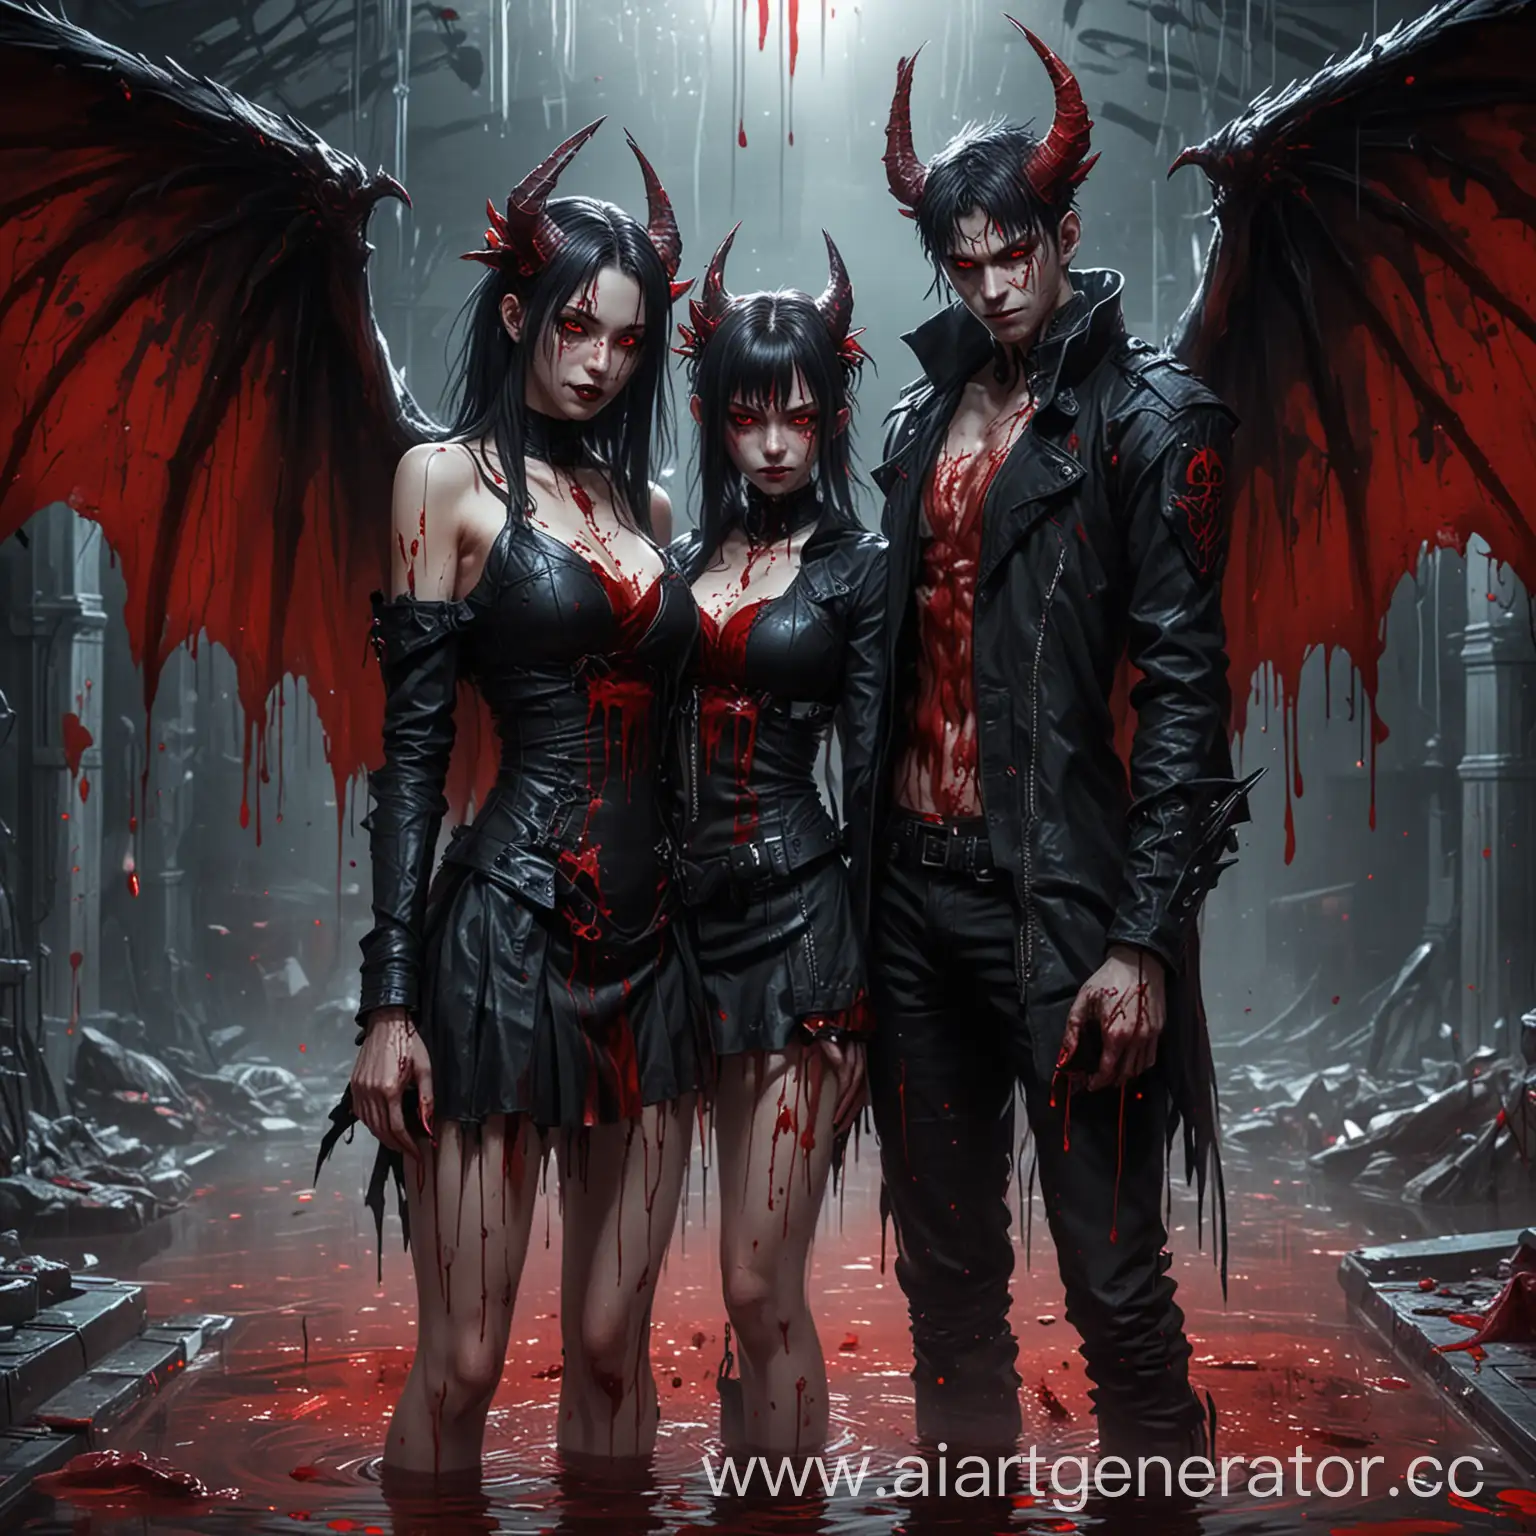 Нарисуй двух демонов-вампиров, парня и девушку в стиле аниме, стиль одежды киберпанк, у них красные глаза, с вампирскими клыками, по которым стекает кровь, рога демонов и крылья,они стоят в луже крови среди мёртвых людей, в вампирской одежде, на руках у них острые когти. 